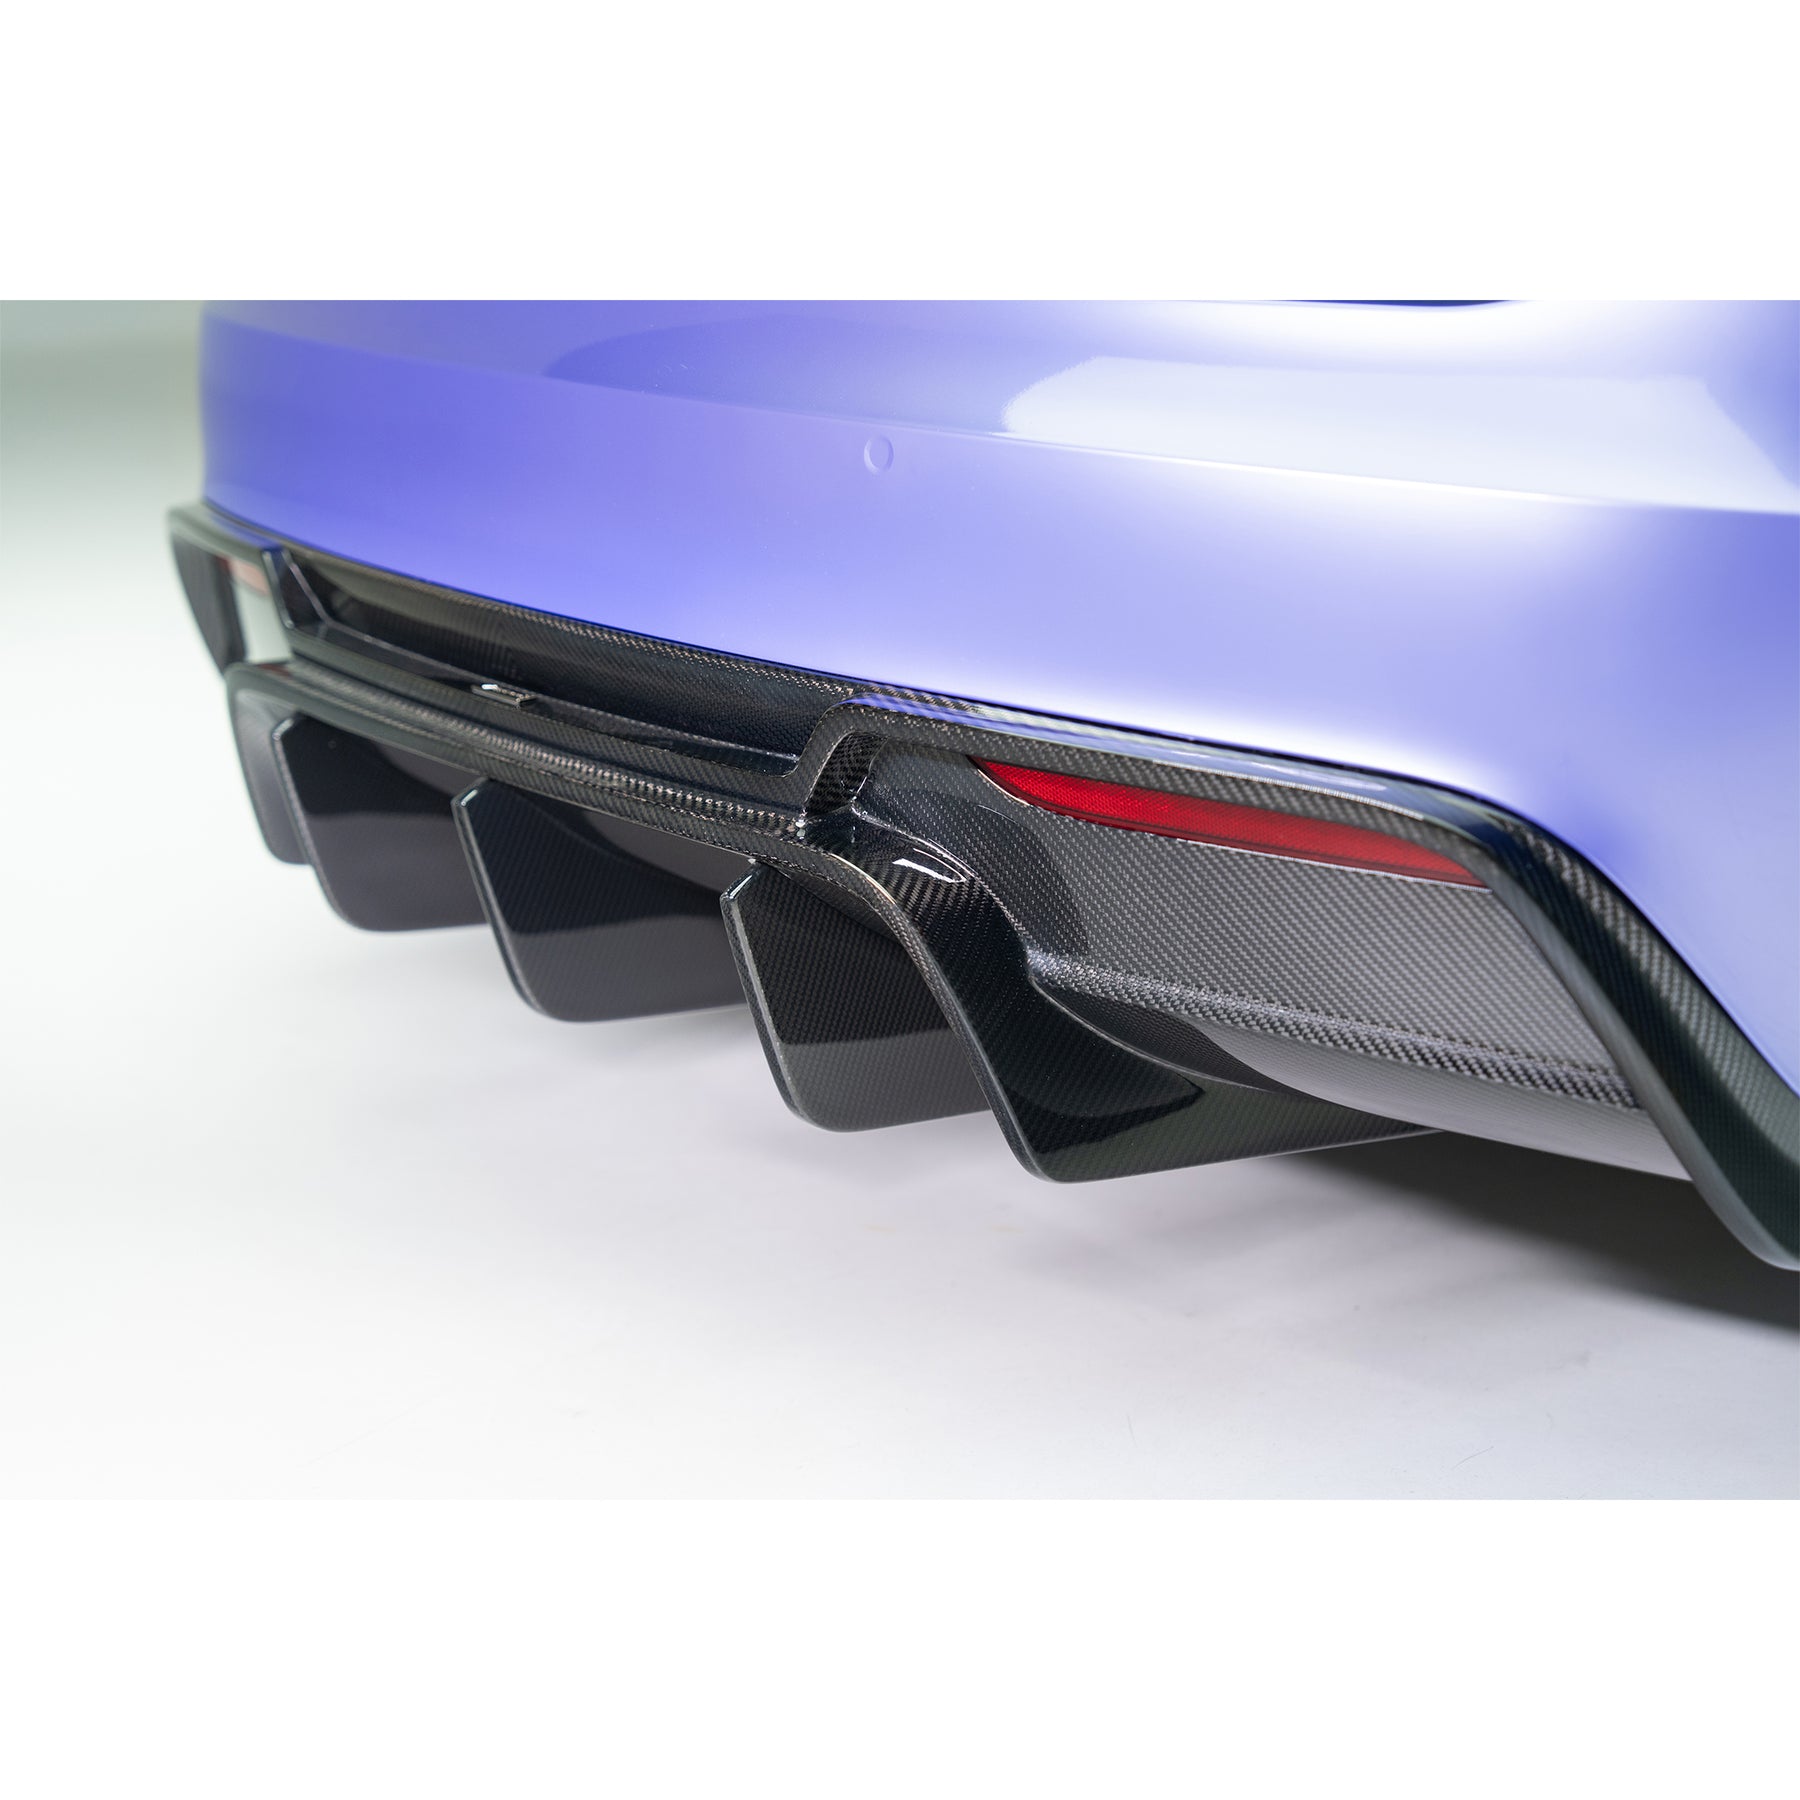 VRS Tesla Model S Plaid Aero Rear Diffuser Carbon Fiber PP 2x2